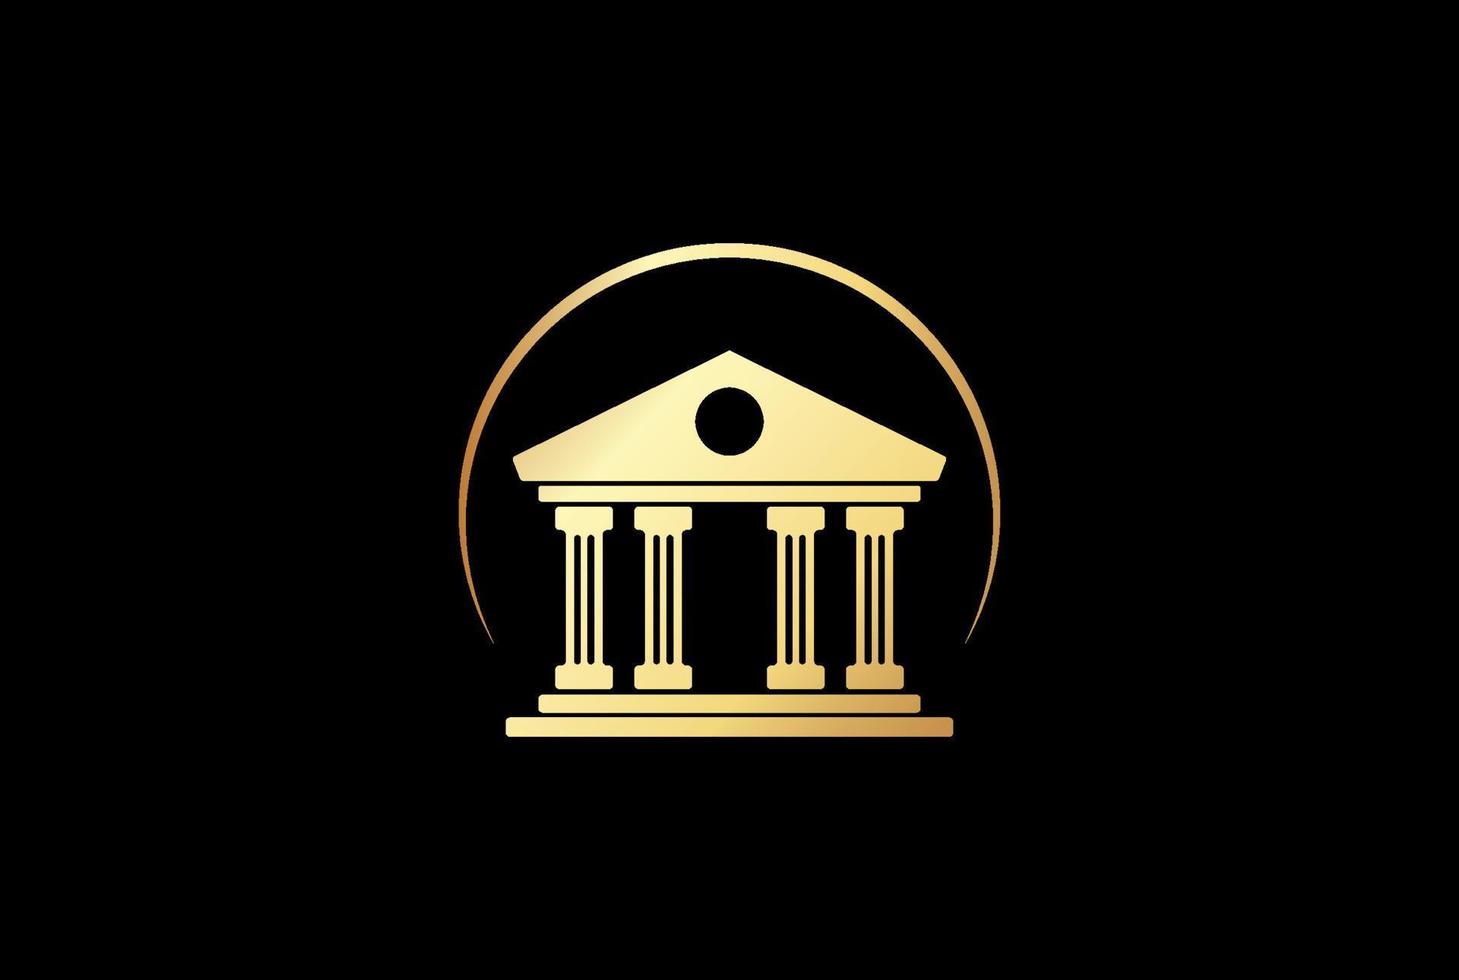 gouden luxe huis met pijler voor bankrechtbank of museumlogo-ontwerpvector vector